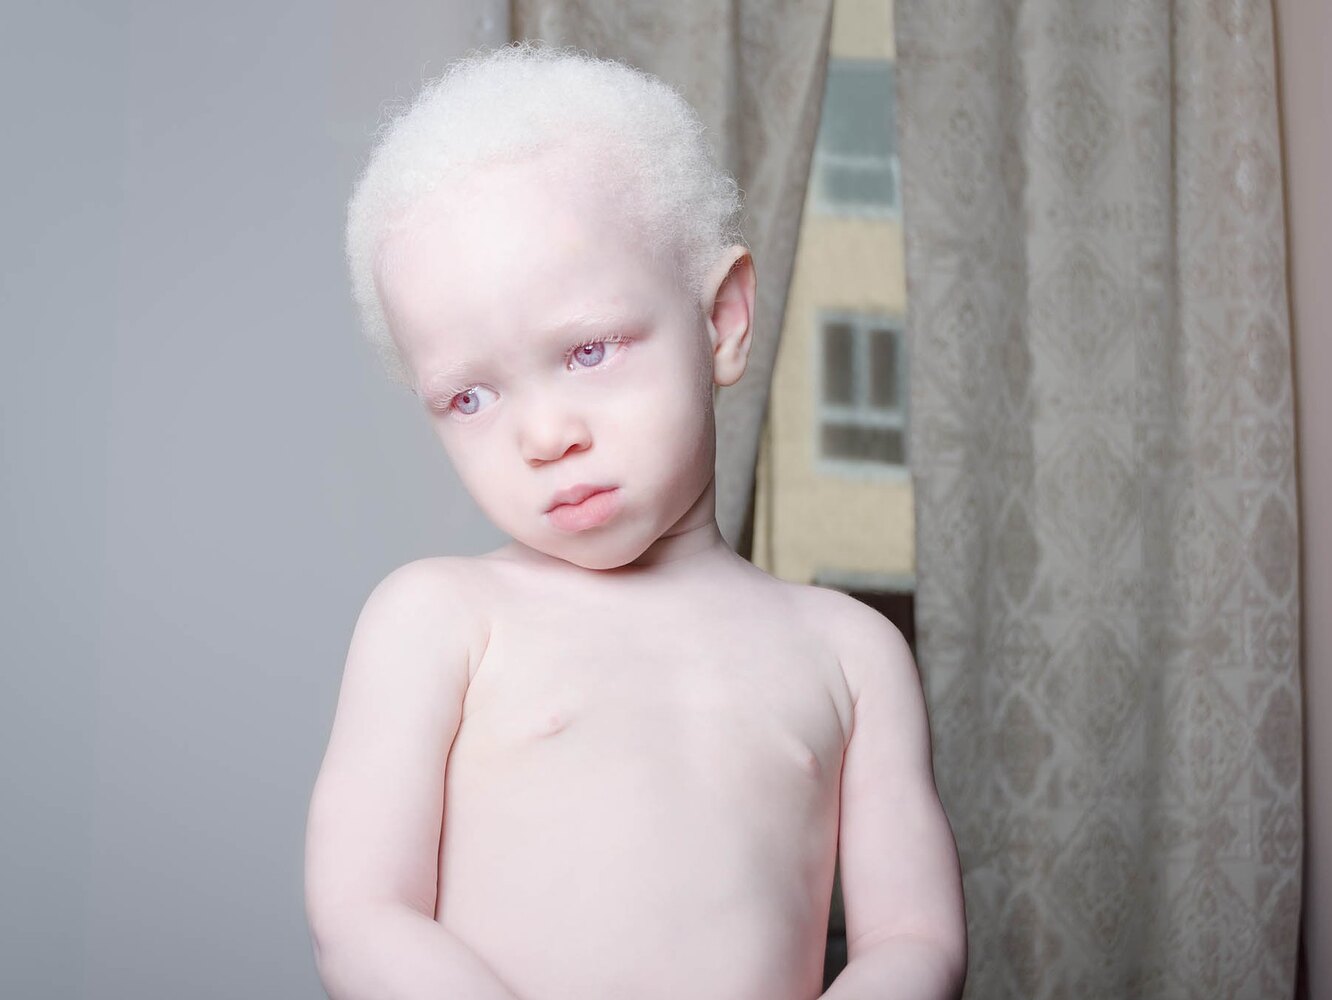 Альбинизм наследственное заболевание